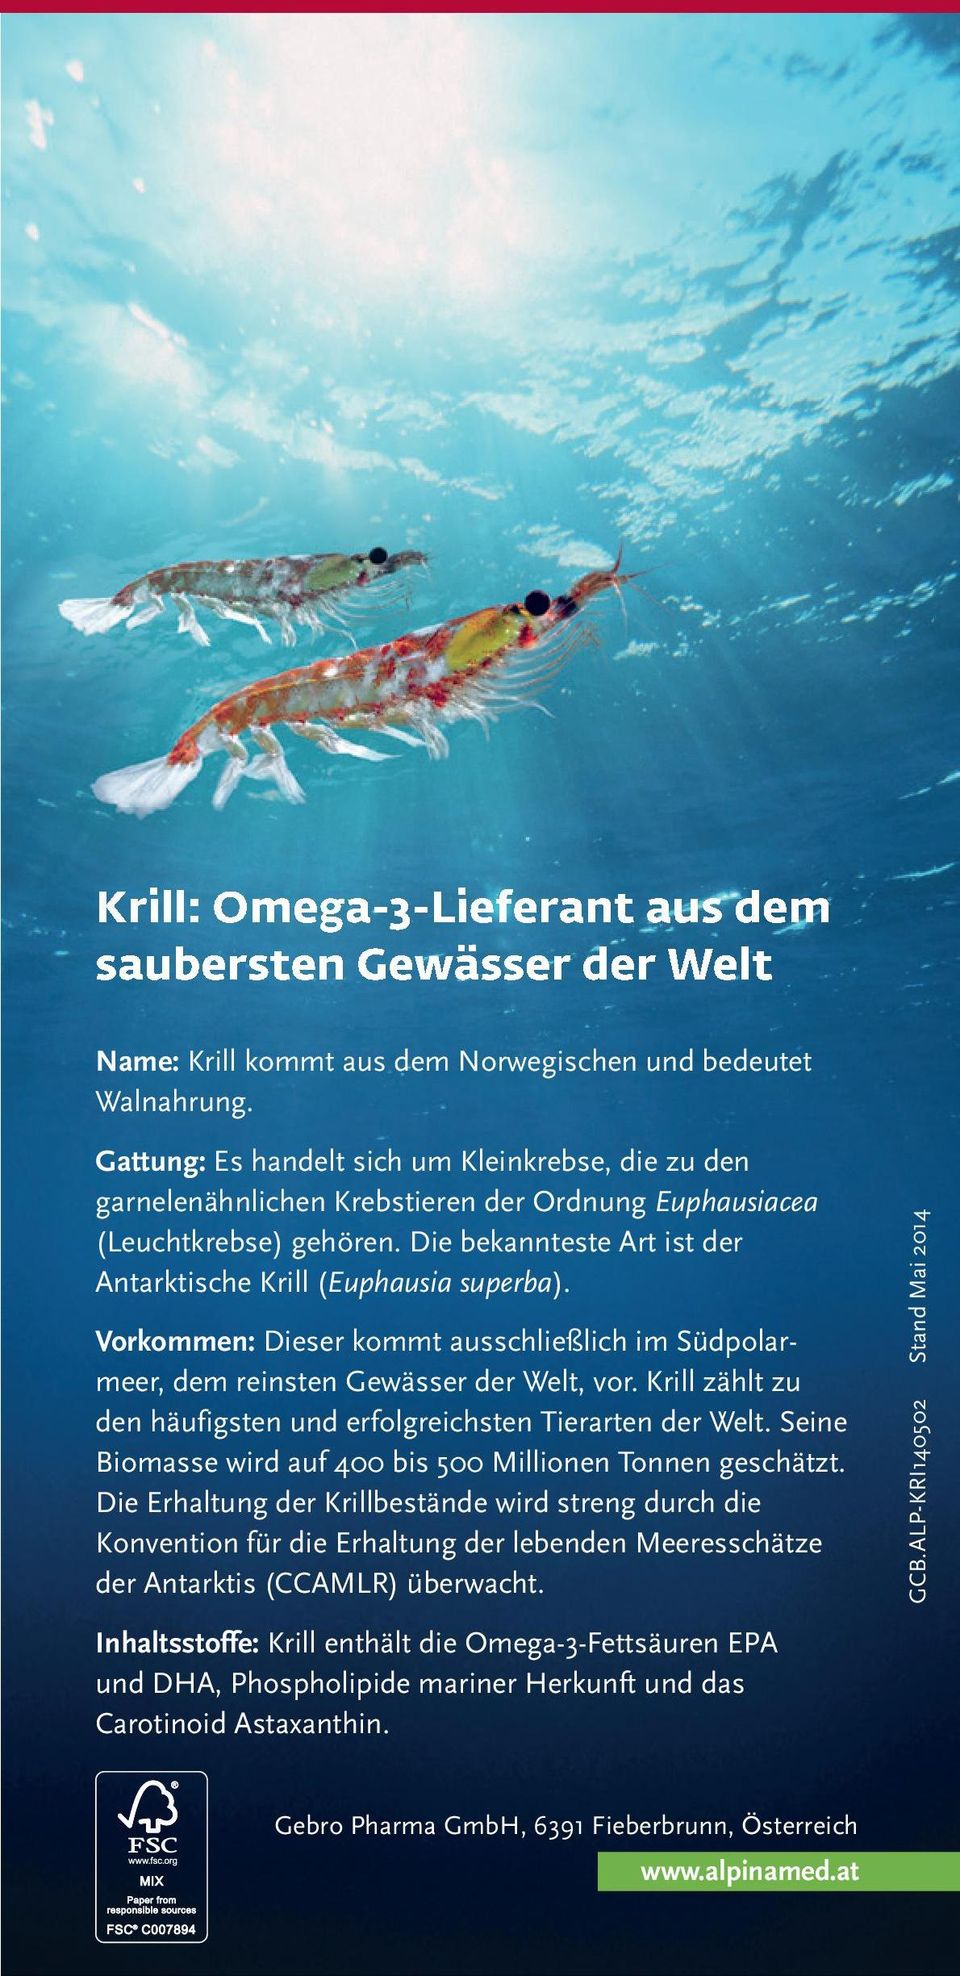 Vorkommen: Dieser kommt ausschließlich im Südpolarmeer, dem reinsten Gewässer der Welt, vor. Krill zählt zu den häufigsten und erfolgreichsten Tierarten der Welt.